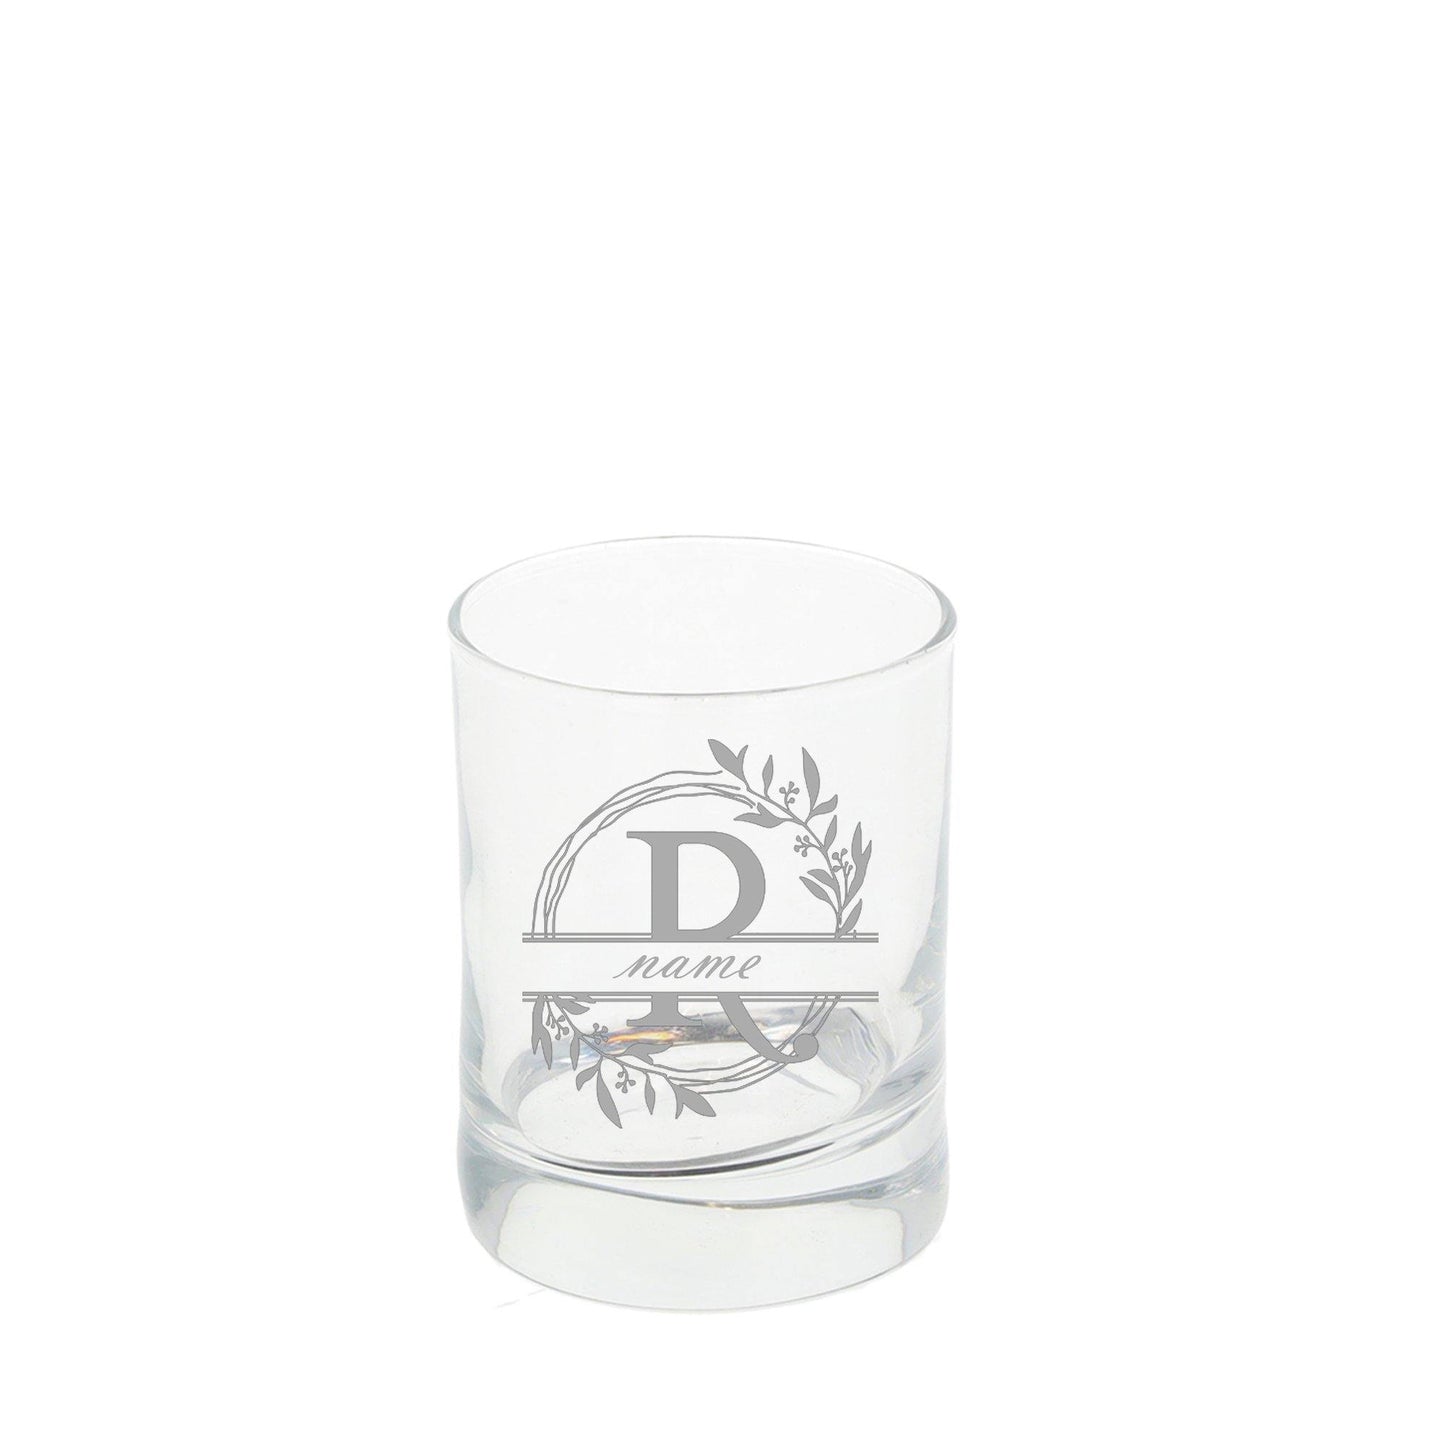 Personalised Engraved Monogram Shot Glass  - Always Looking Good - Personalised Glass  